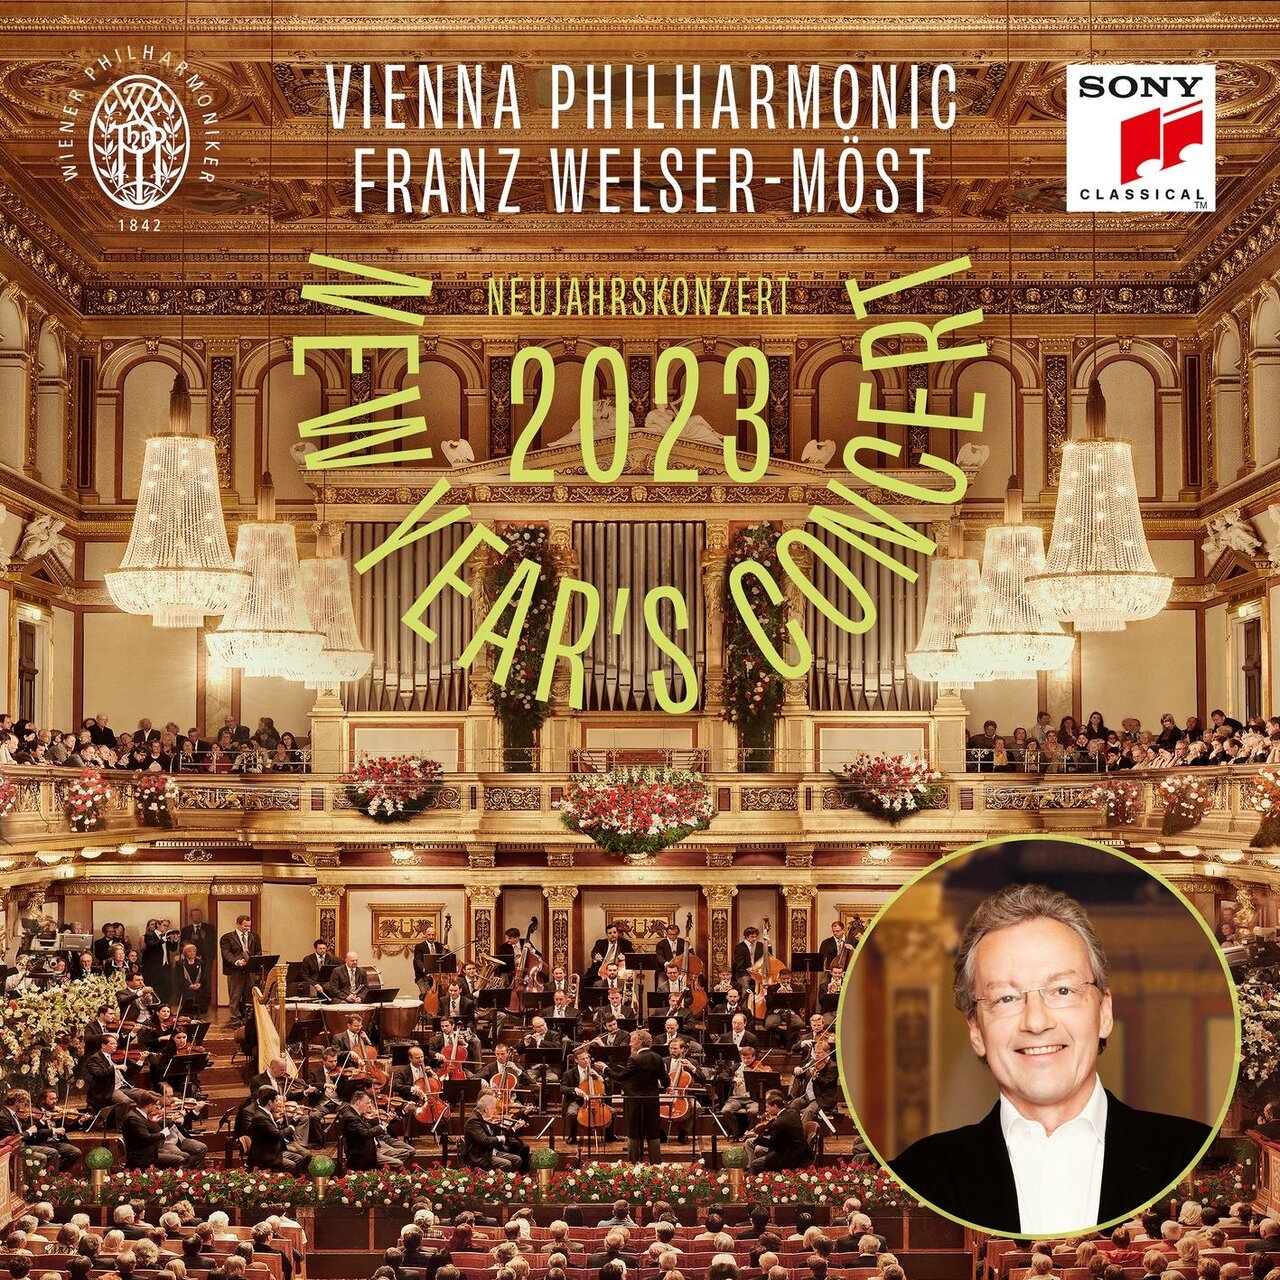 2023维也纳新年音乐会（弗朗茨·威尔瑟 莫斯特,维也纳爱乐乐团）